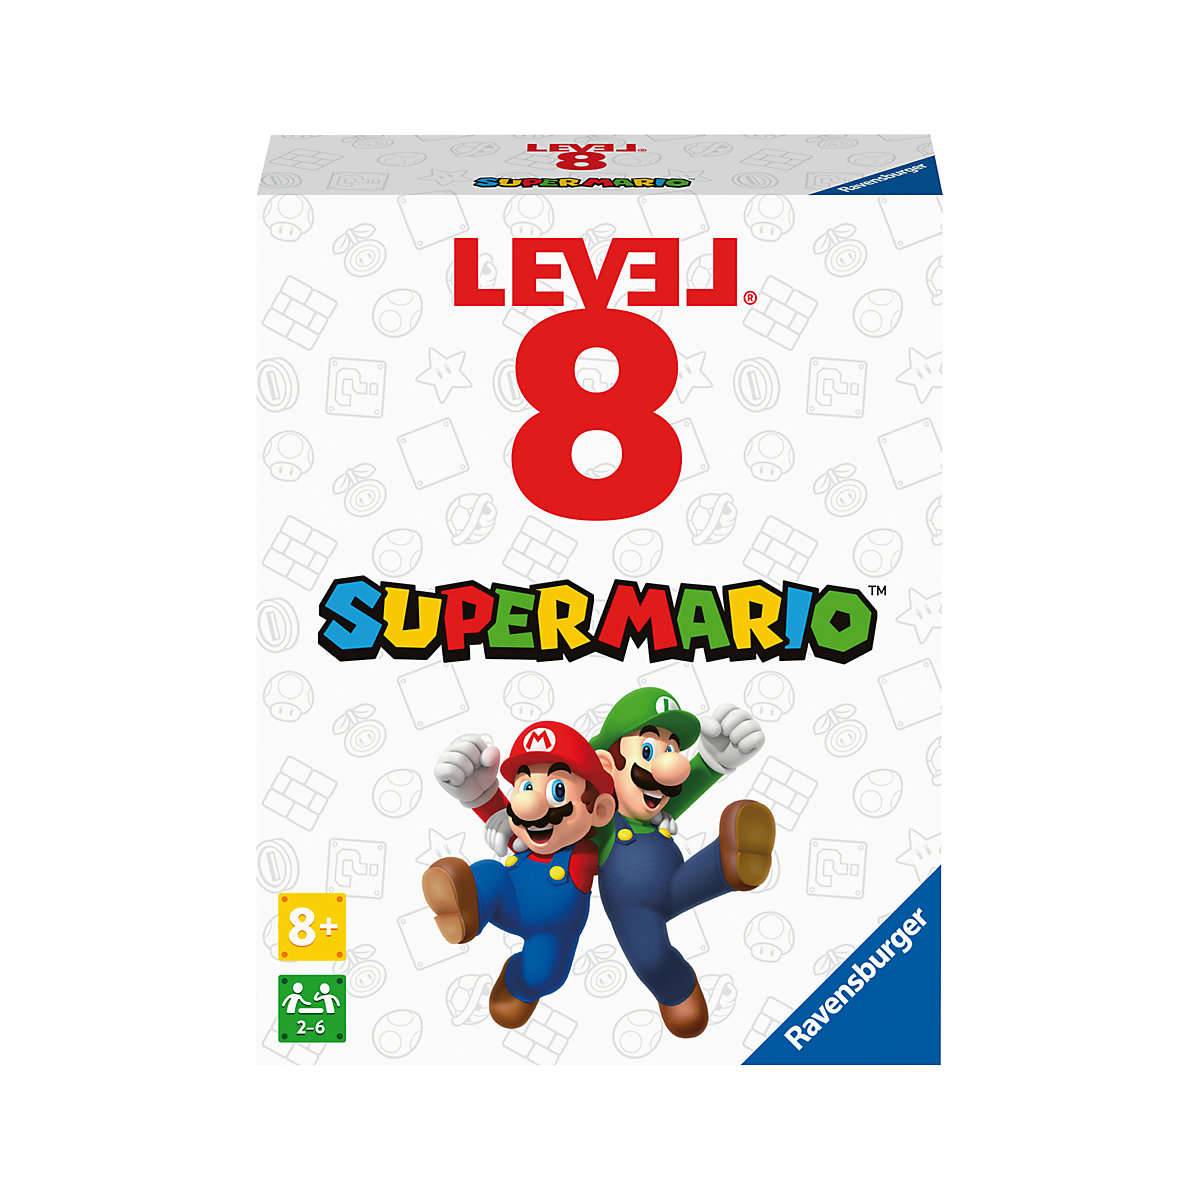 Ravensburger 27343- Super Mario Level 8 Das spannende Kartenspiel für 2-6 Spieler ab 8 Jahren